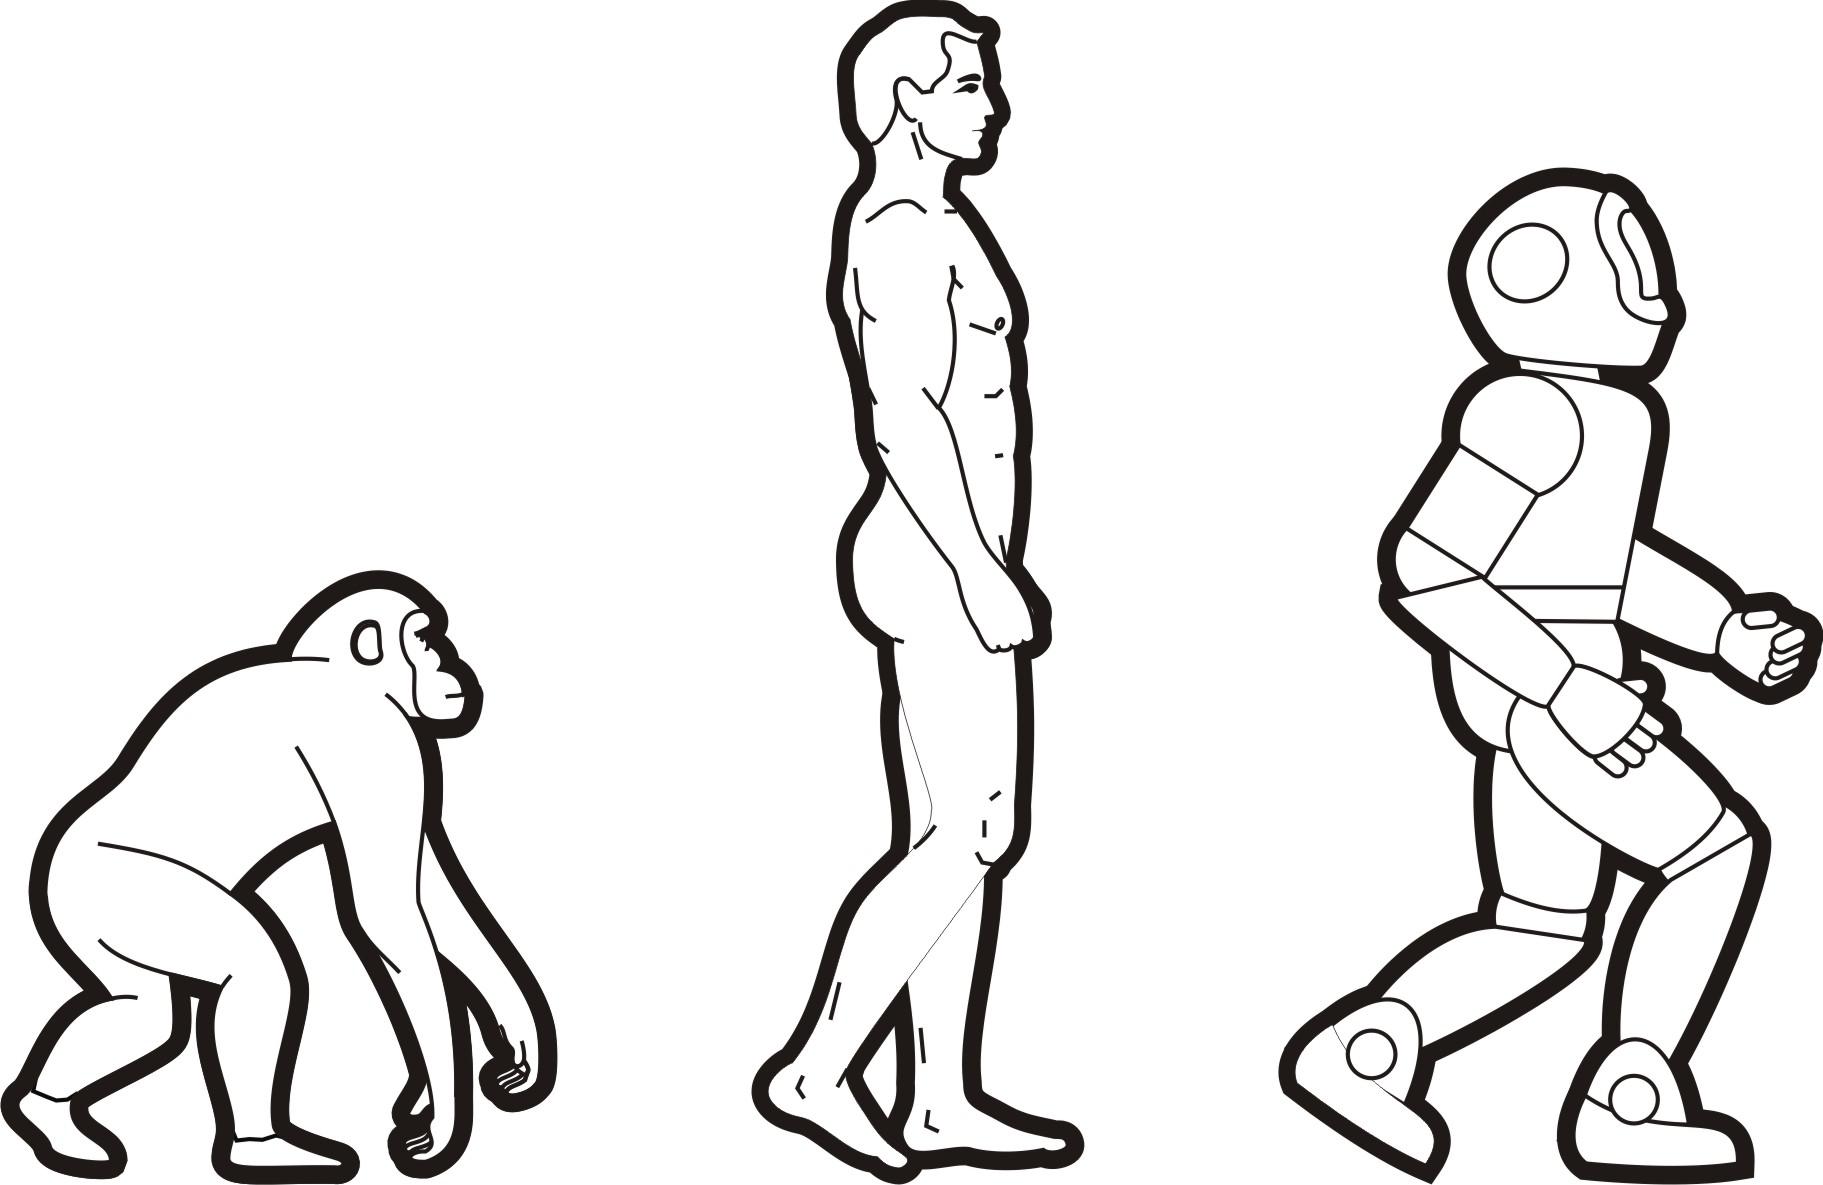 Evolución del hombre (ilustración) - Banco de imágenes - UMA Divulga